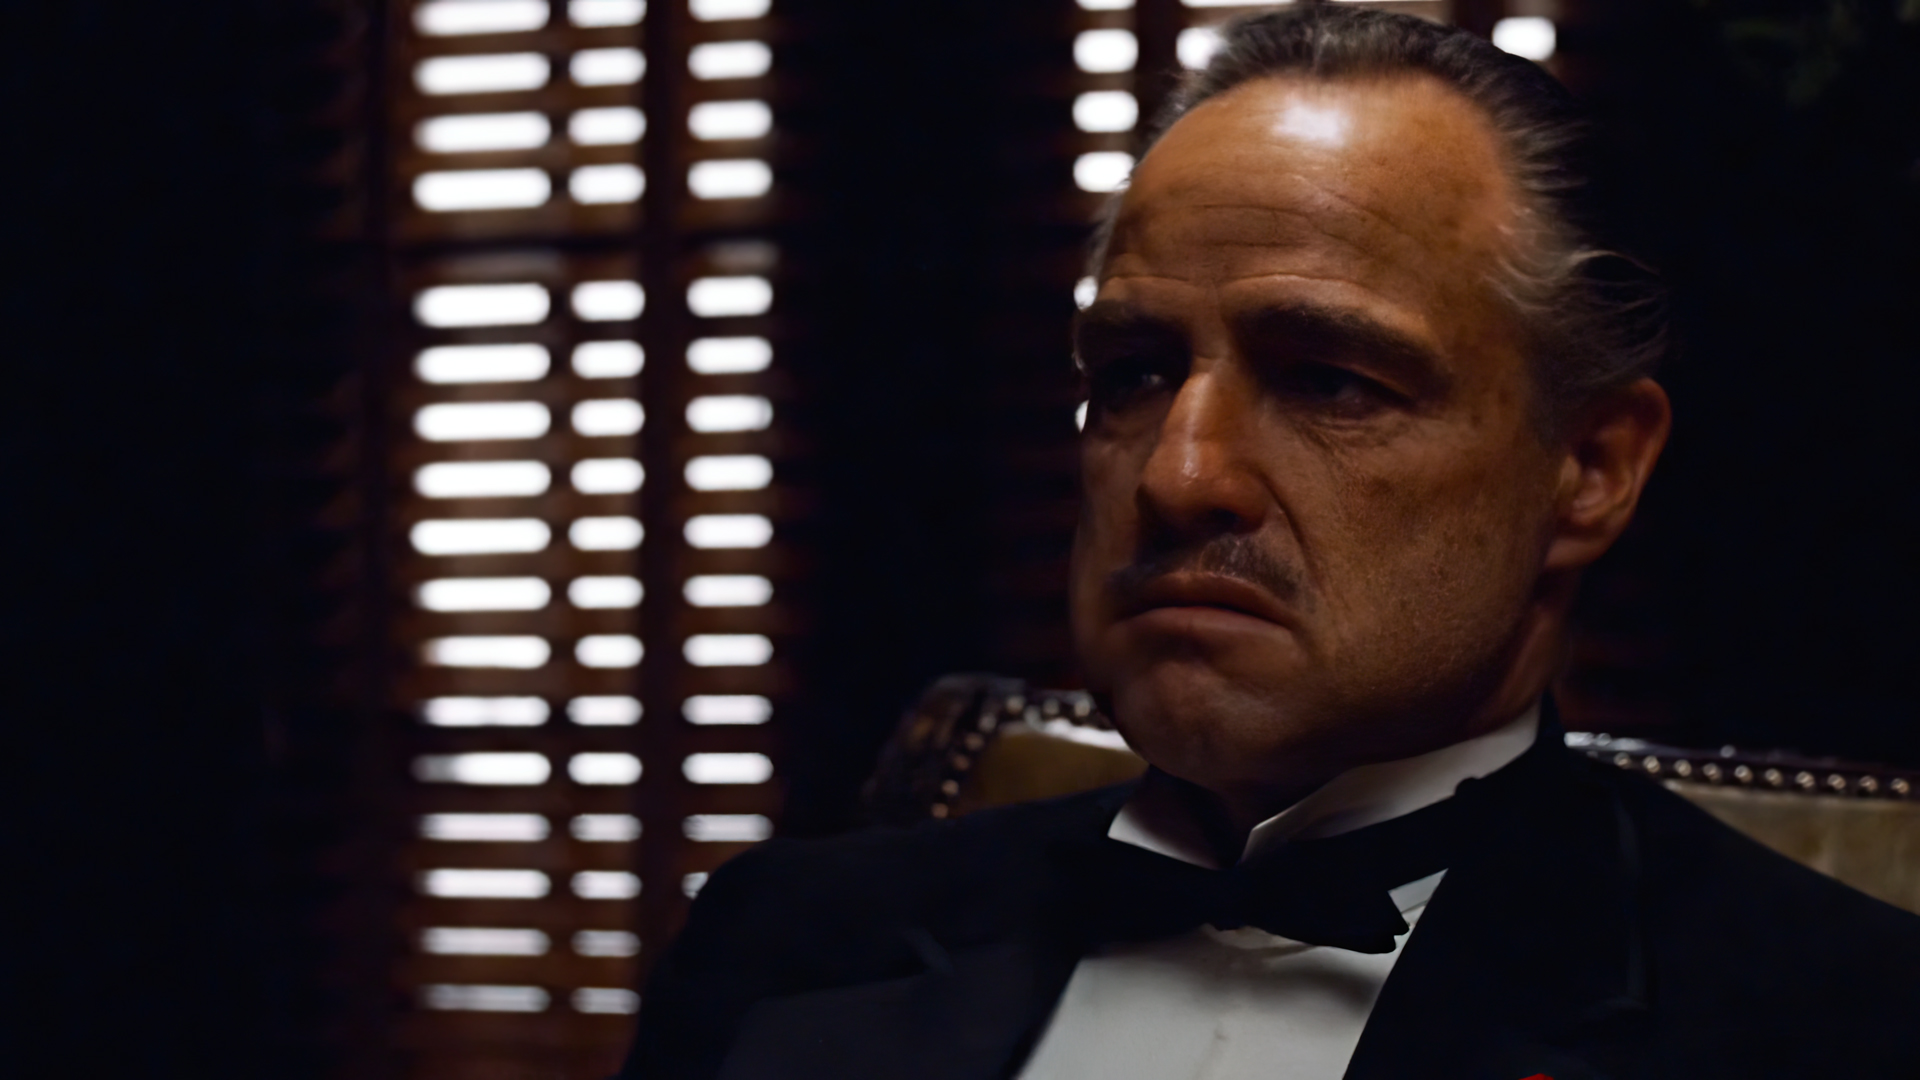 People 1920x1080 The Godfather Vito Corleone Marlon Brando actor movies film stills Francis Ford Coppola Mafia men